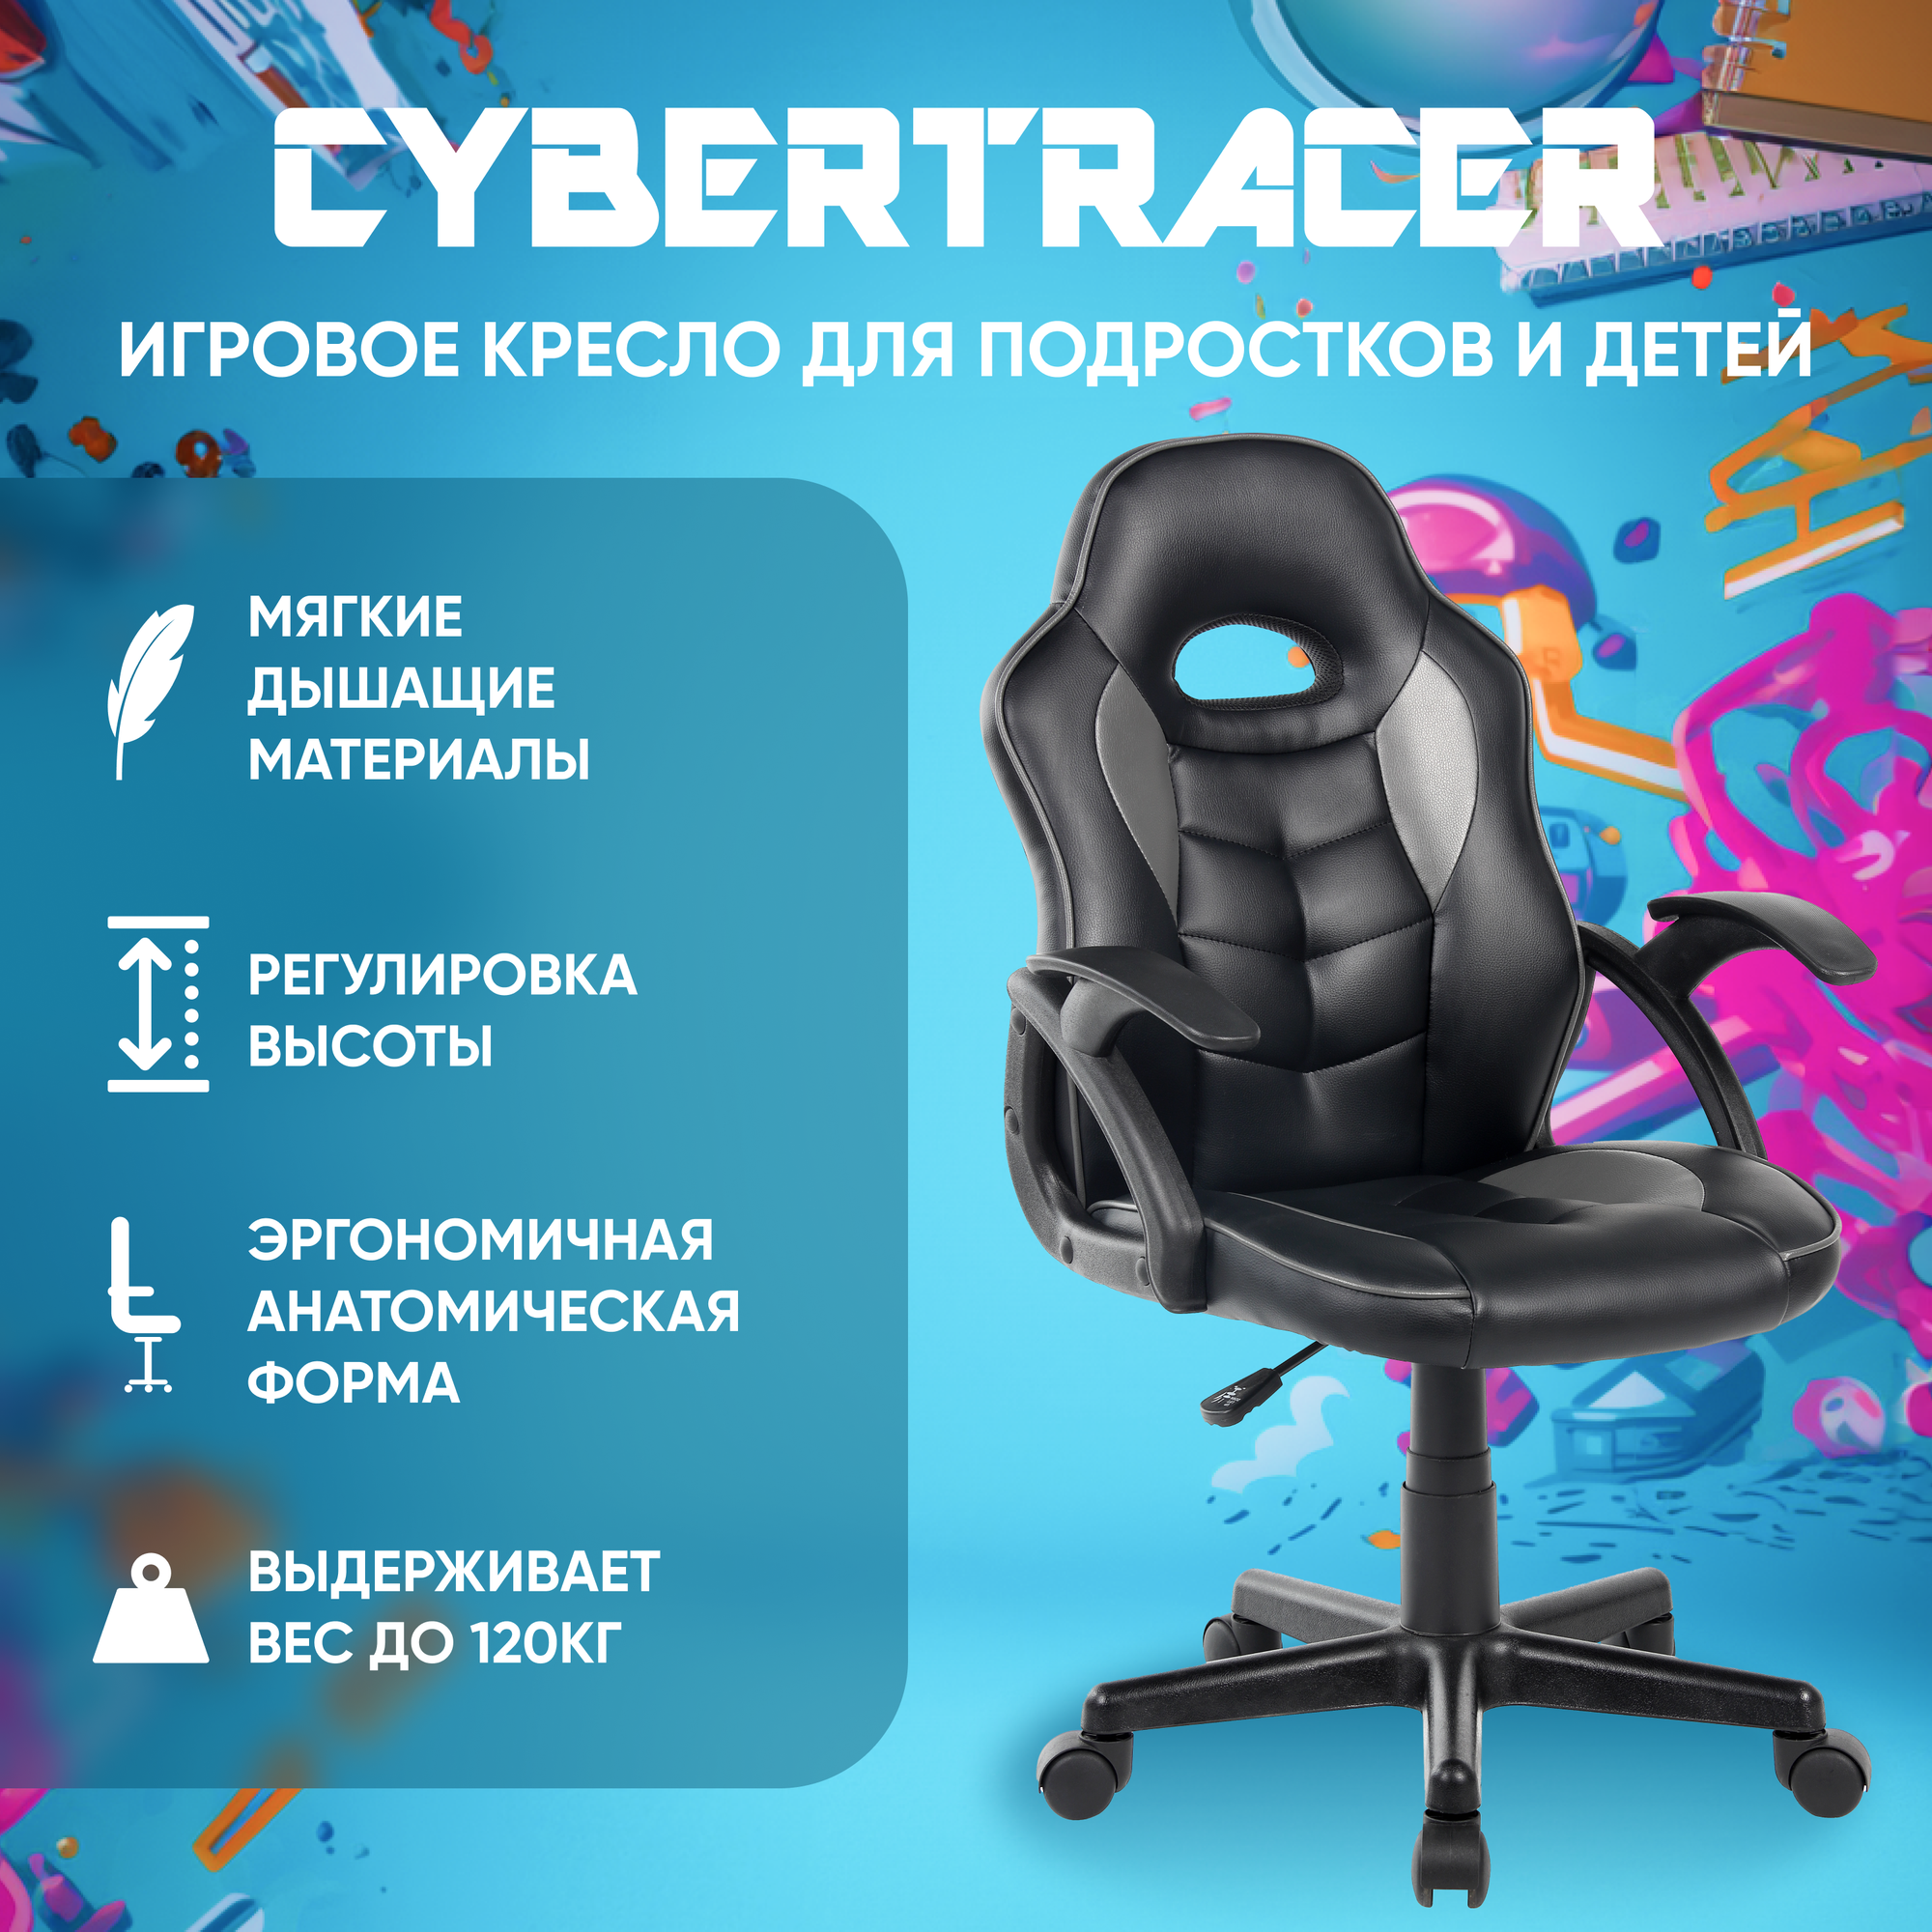 Игровое компьютерное кресло для детей и подростков CYBERTRACER черное